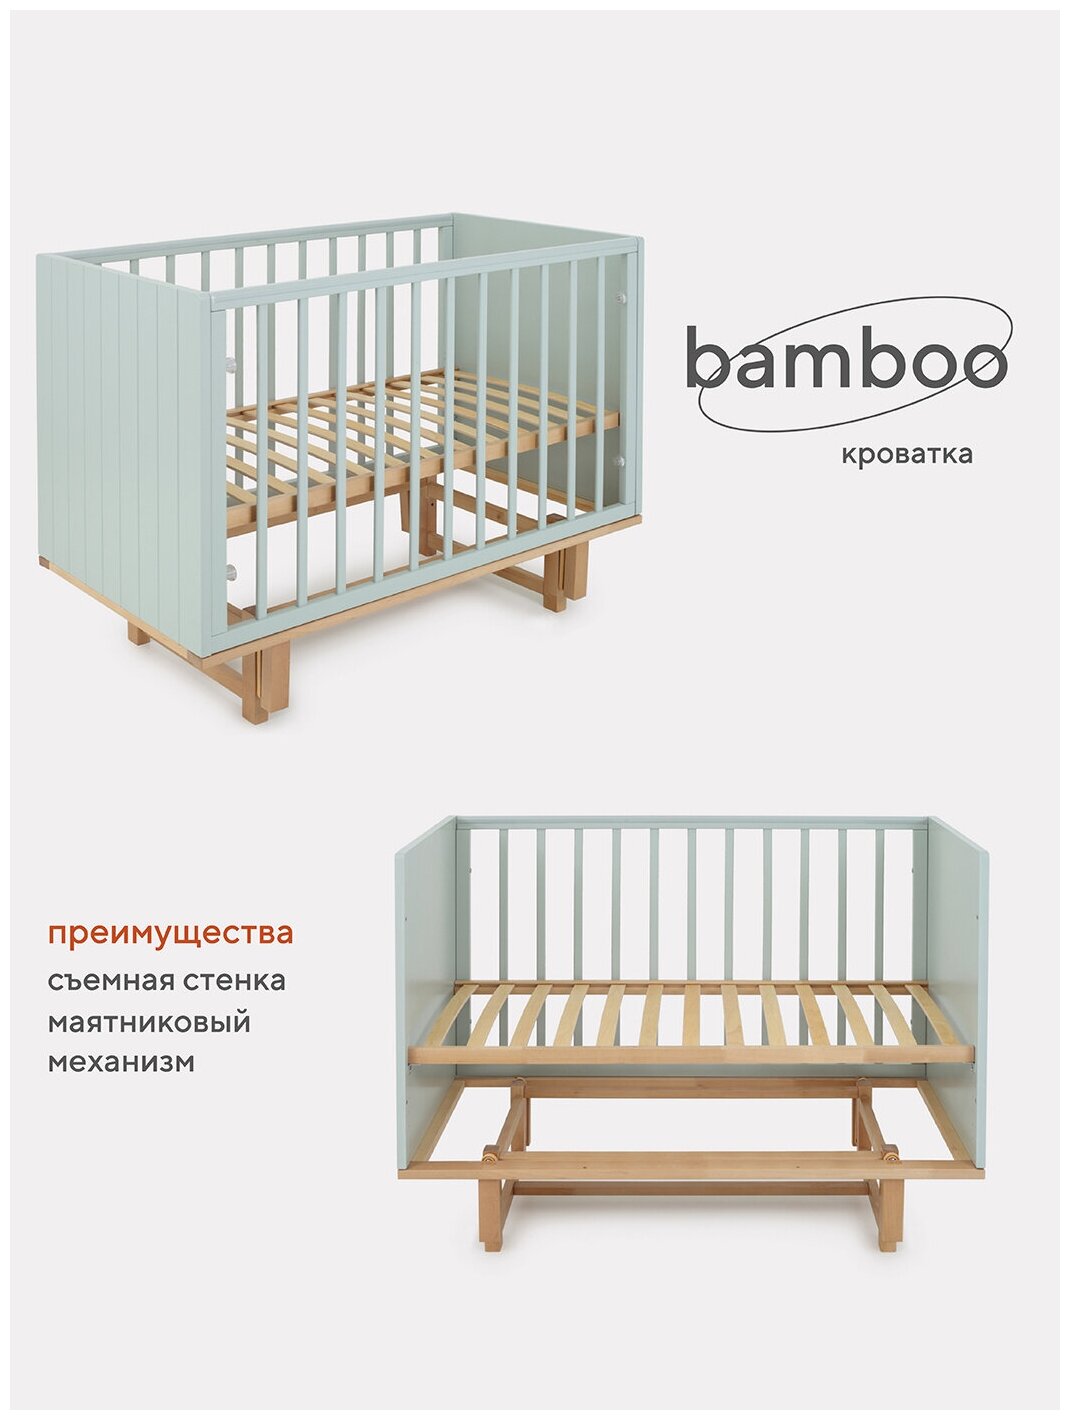 Кровать детская Rant Bamboo маятник продольного качания в комплекте арт.768, Light Green